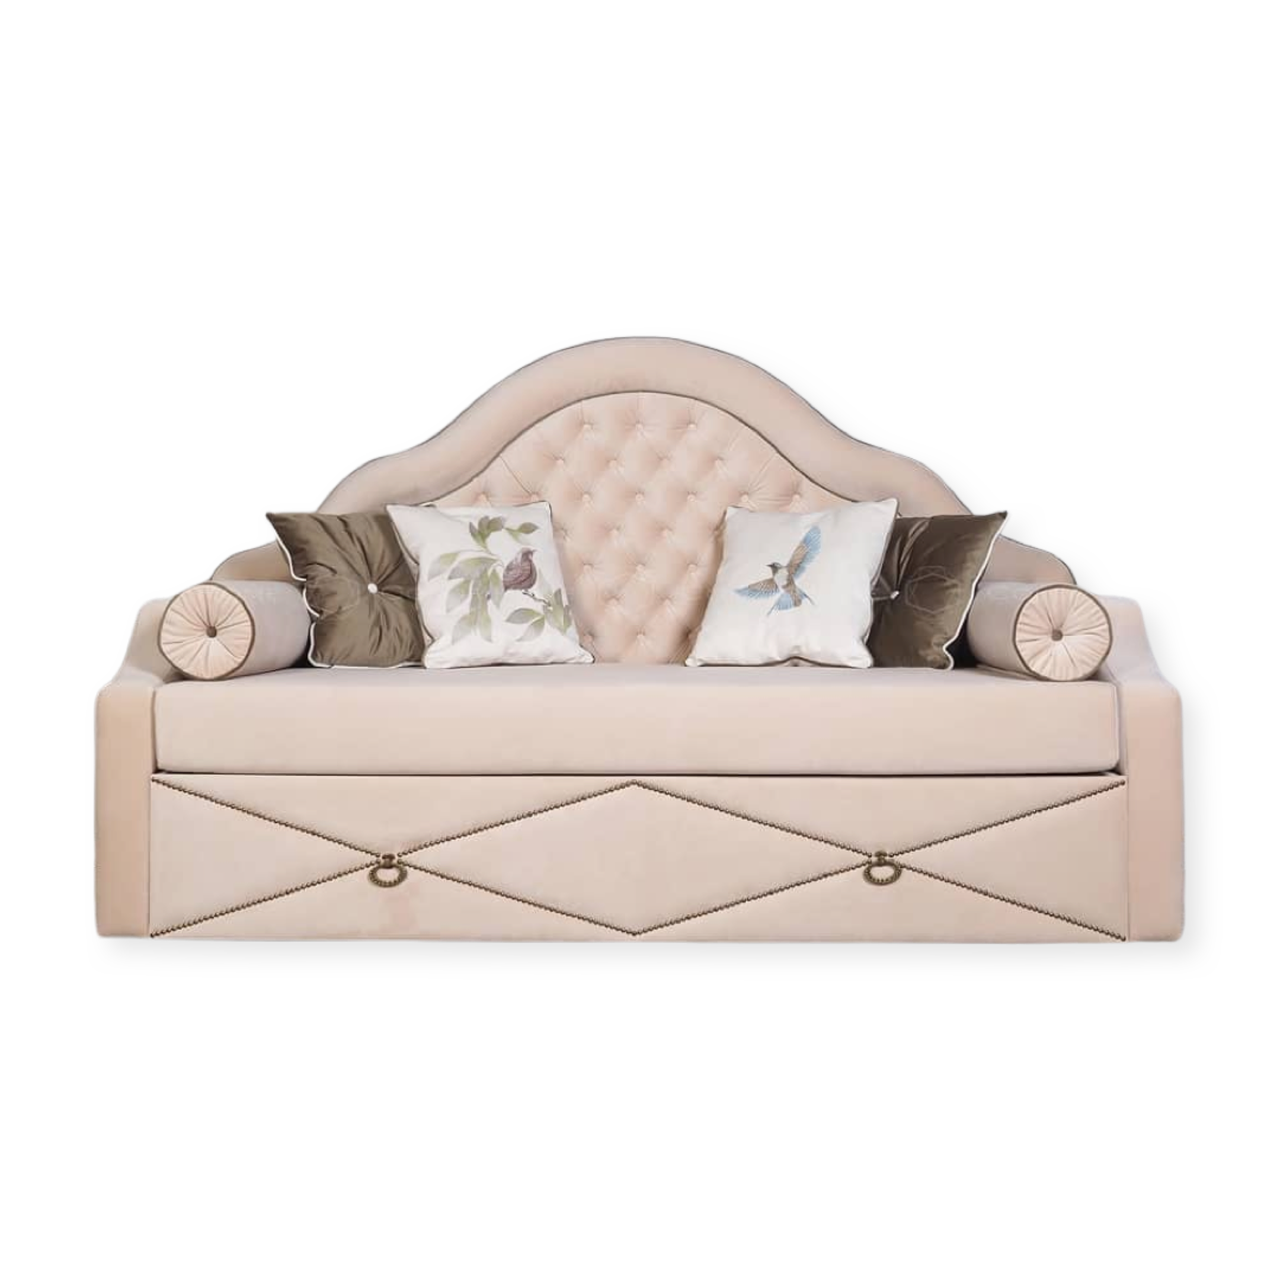 Ліжко диван для підлітка дівчинки MeBelle ETALLE 90х190 з матрацом розкладний, пудровий бежевий велюр